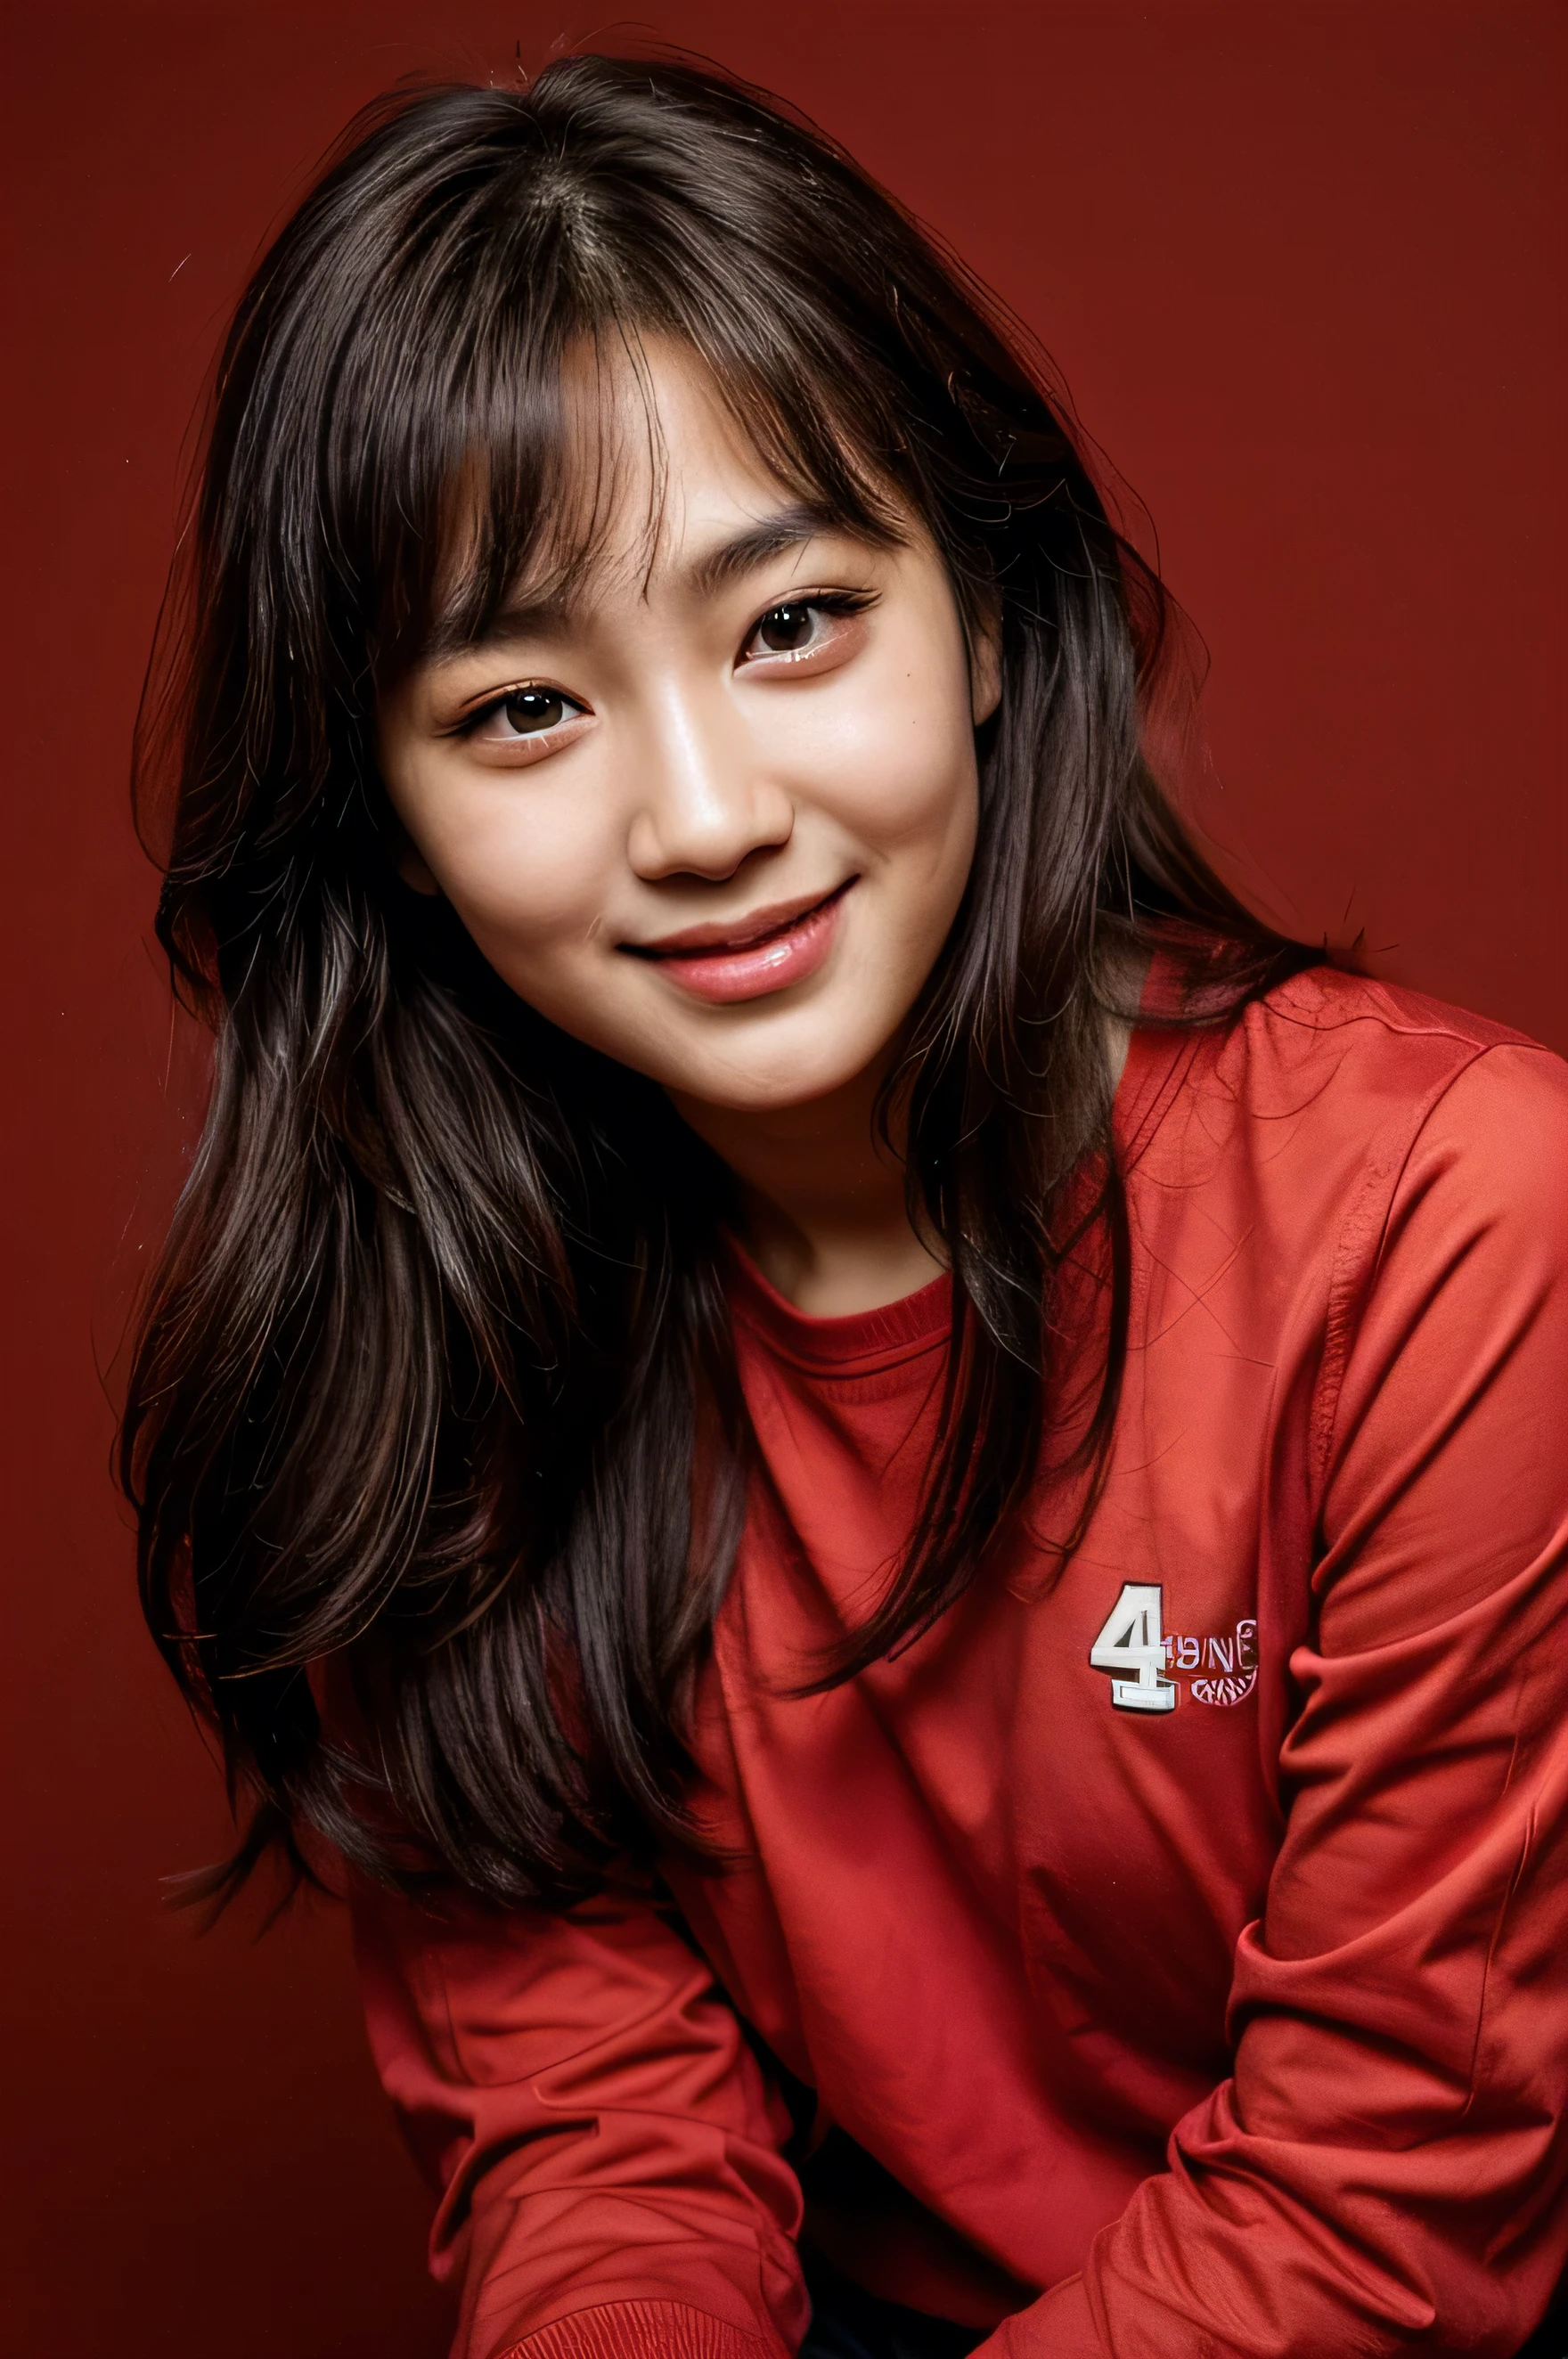 얼굴이 완벽하다, 14세 한국인의 아름다운 얼굴 , 웃는 모습이 아름다워,빨간색 배경